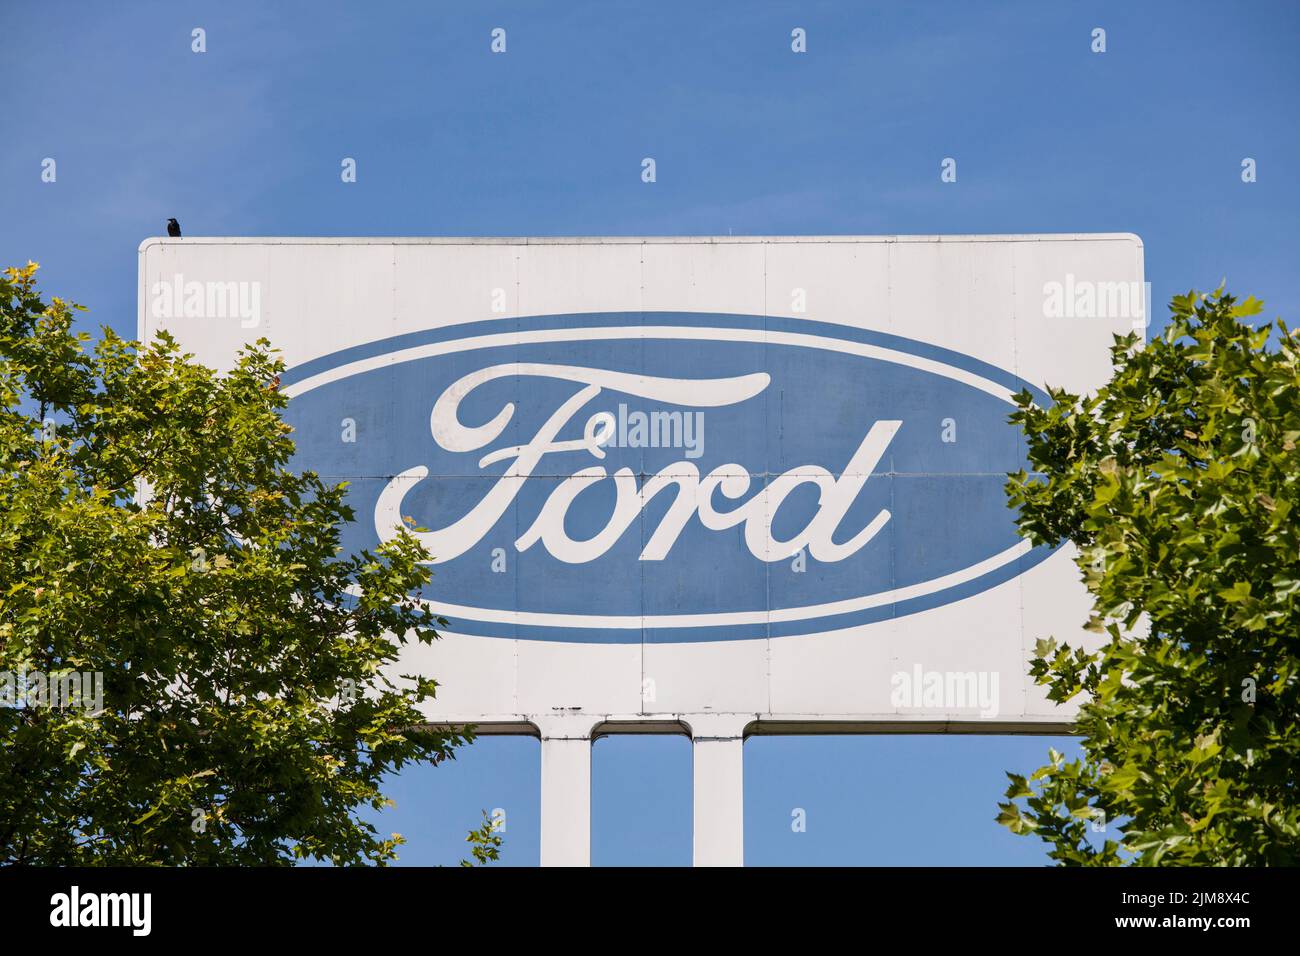 Grande cartello pubblicitario presso la fabbrica automobilistica Ford nel quartiere Niehl, Colonia, Germania. grosses Werbeschild an den Ford-Werken a Niehl, K. Foto Stock